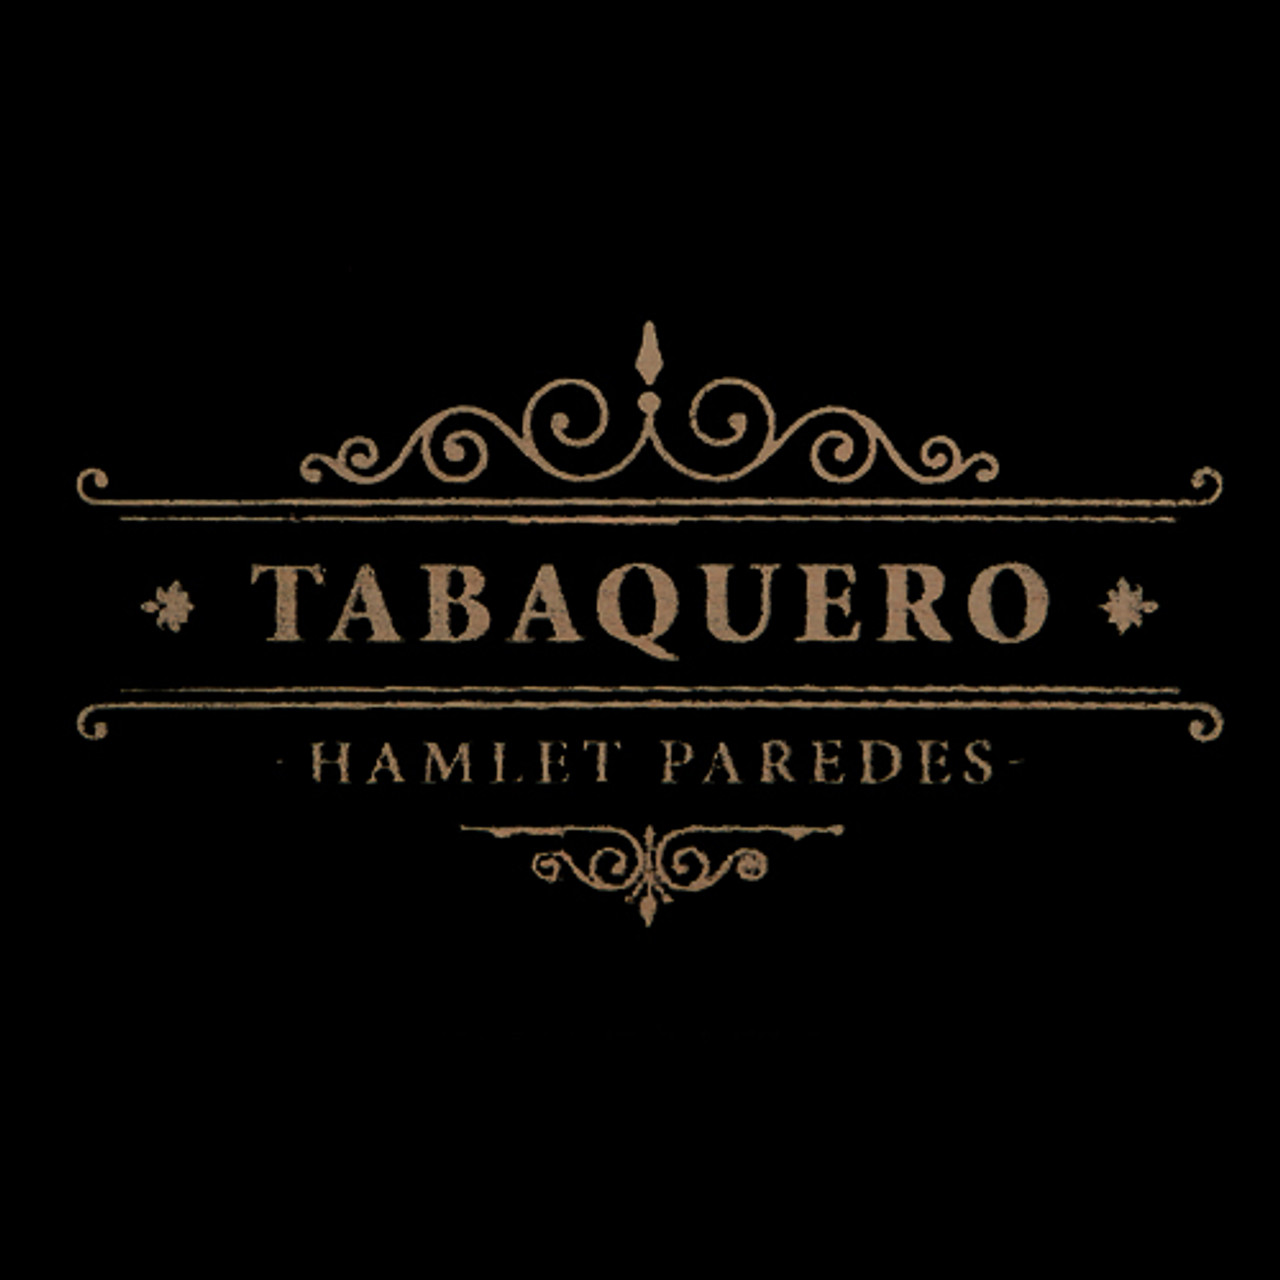 Tabaquero by Hamlet Paredes Bala Cigars - 5.75 x 58 (Box of 20)